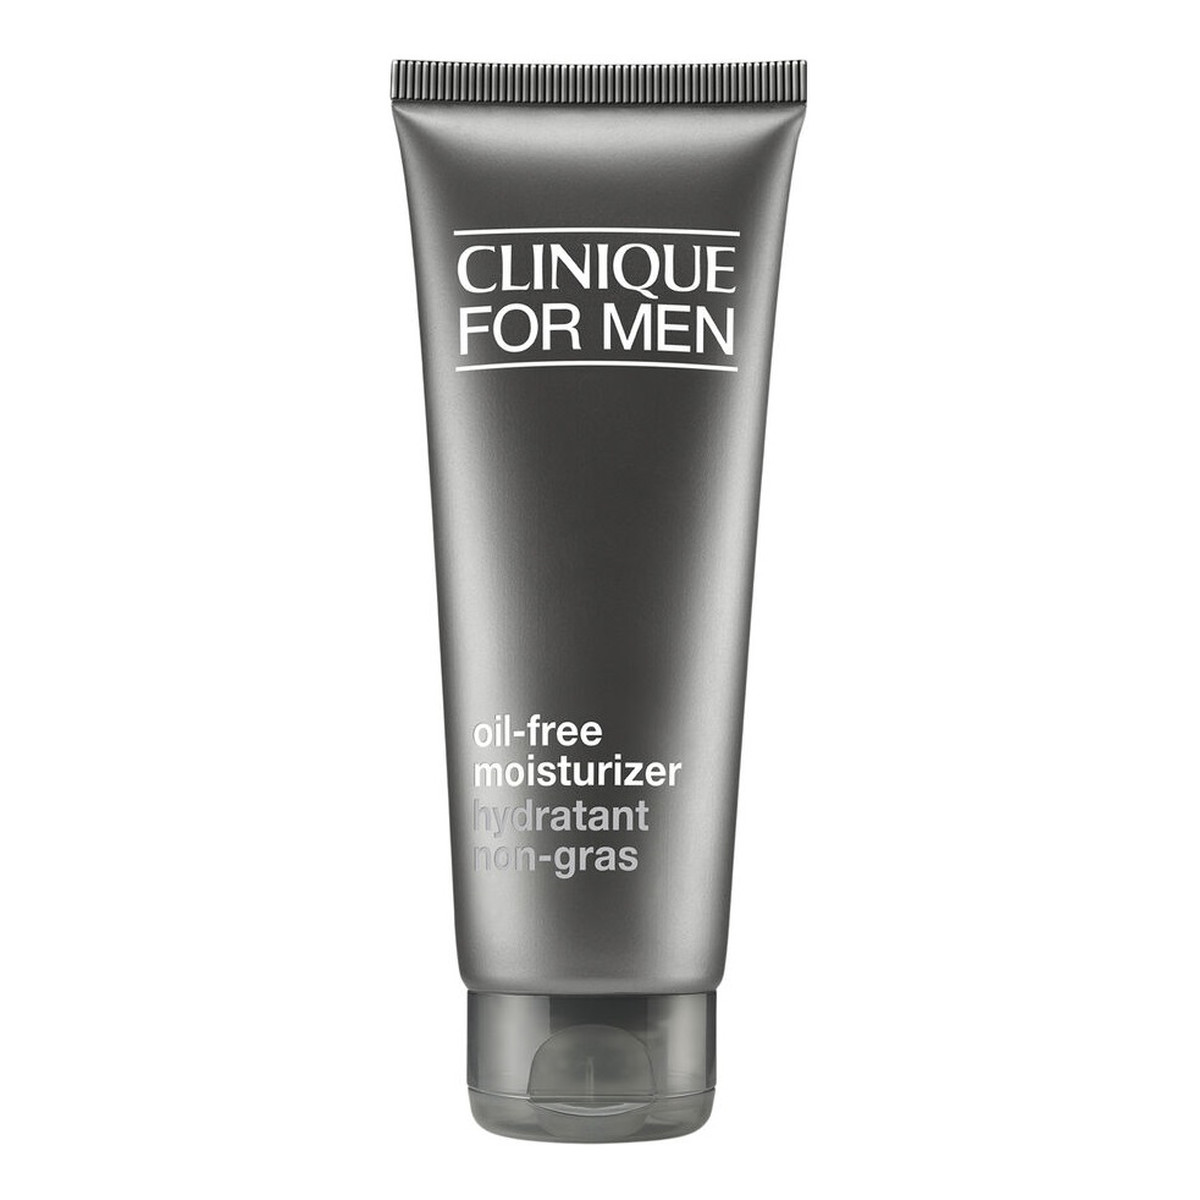 Clinique For men oily-free moisturizer nawilżający Żel do twarzy 100ml